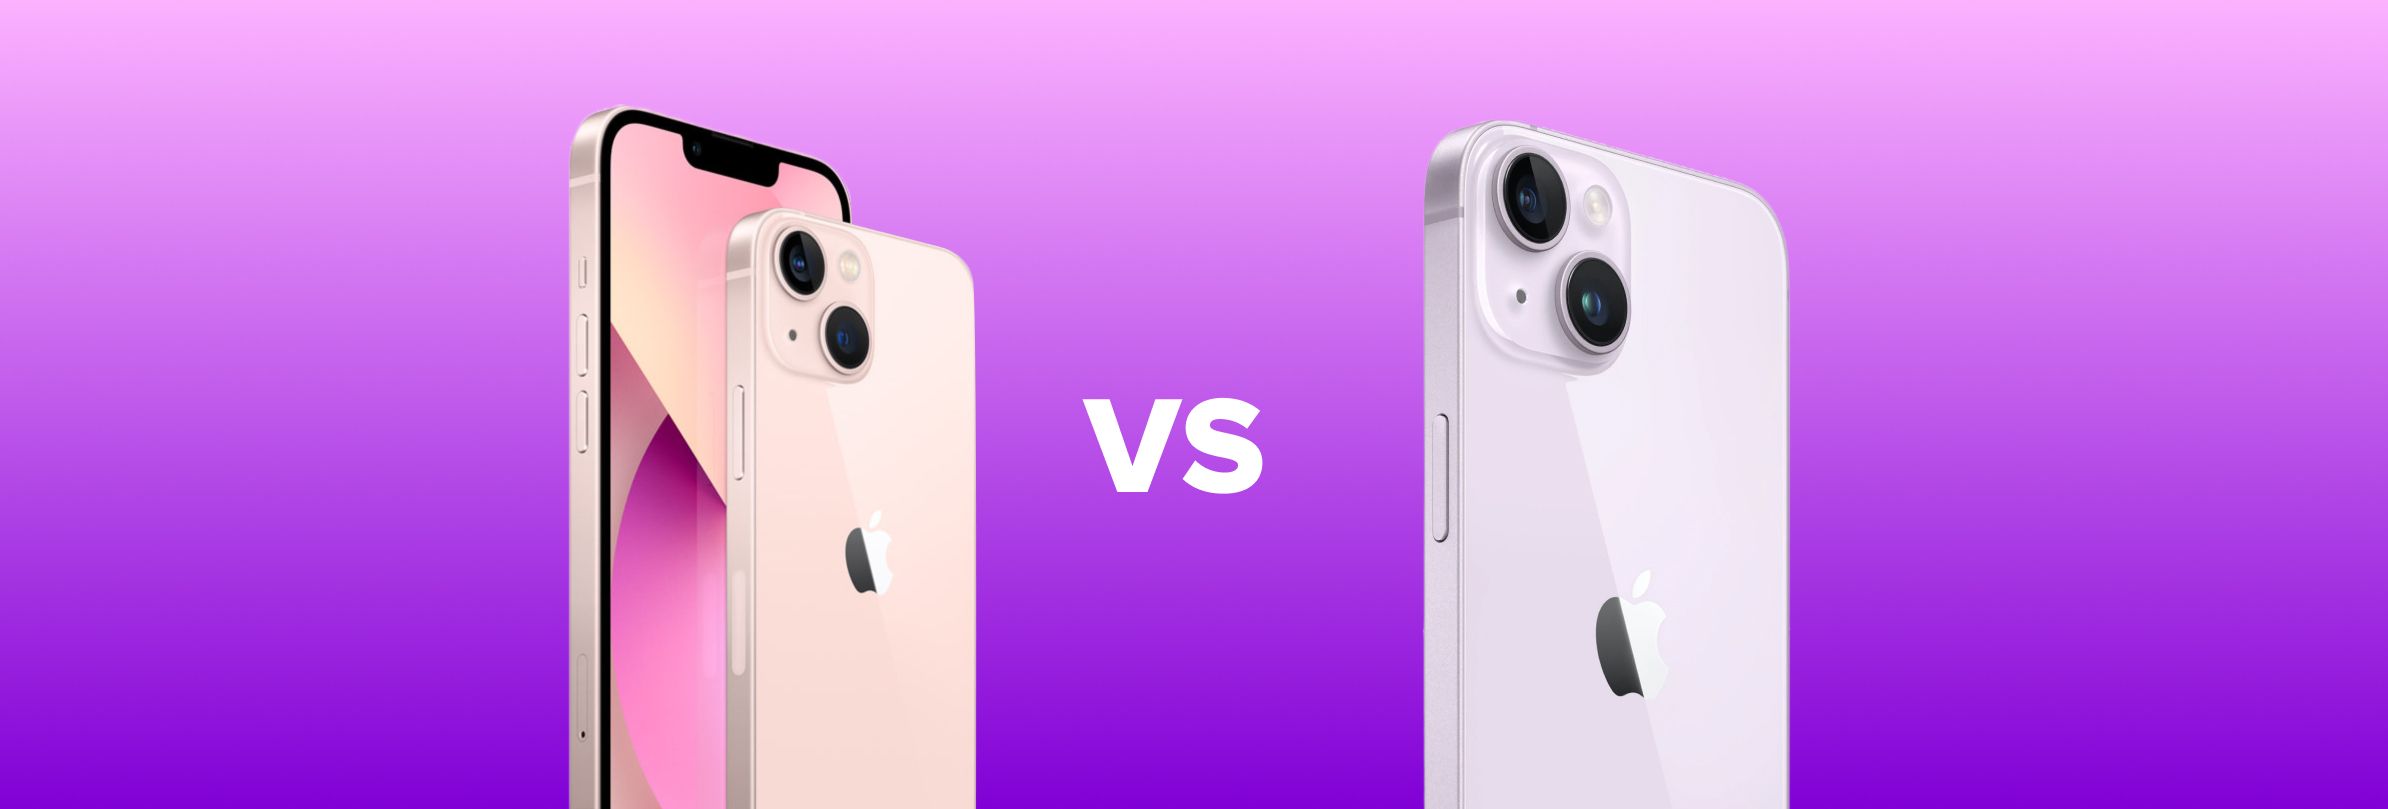 iPhone 13 vs iPhone 14 - comparație între cele două modele